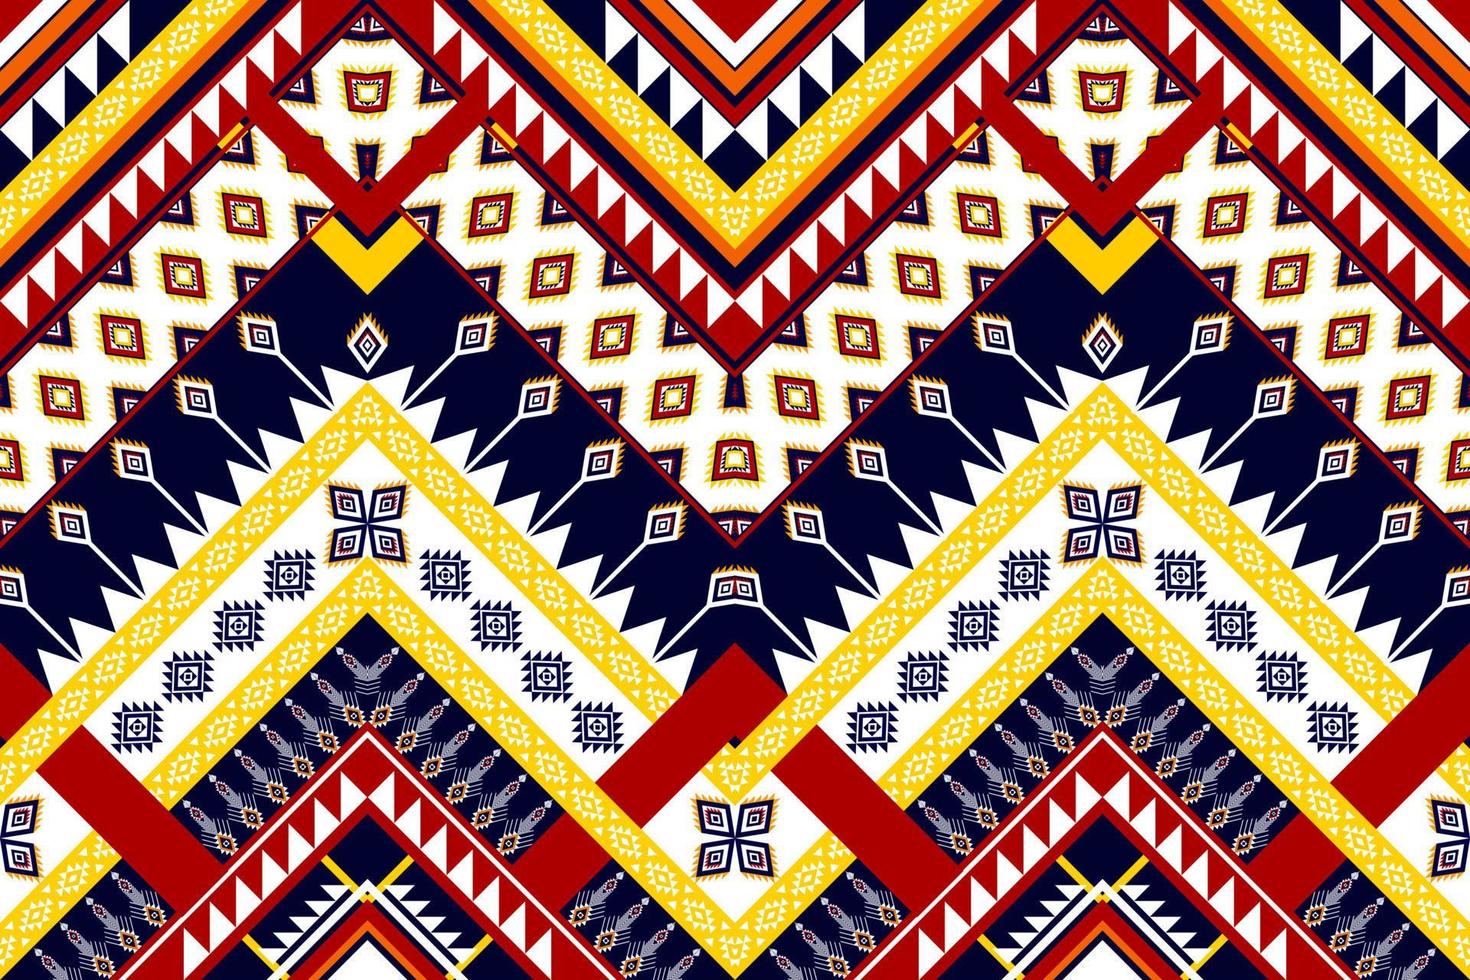 conception abstraite de motif ethnique géométrique. tapis en tissu aztèque ornement mandala ethnique chevron textile décoration papier peint. fond de vecteur de broderie traditionnelle ethnique indigène boho tribal